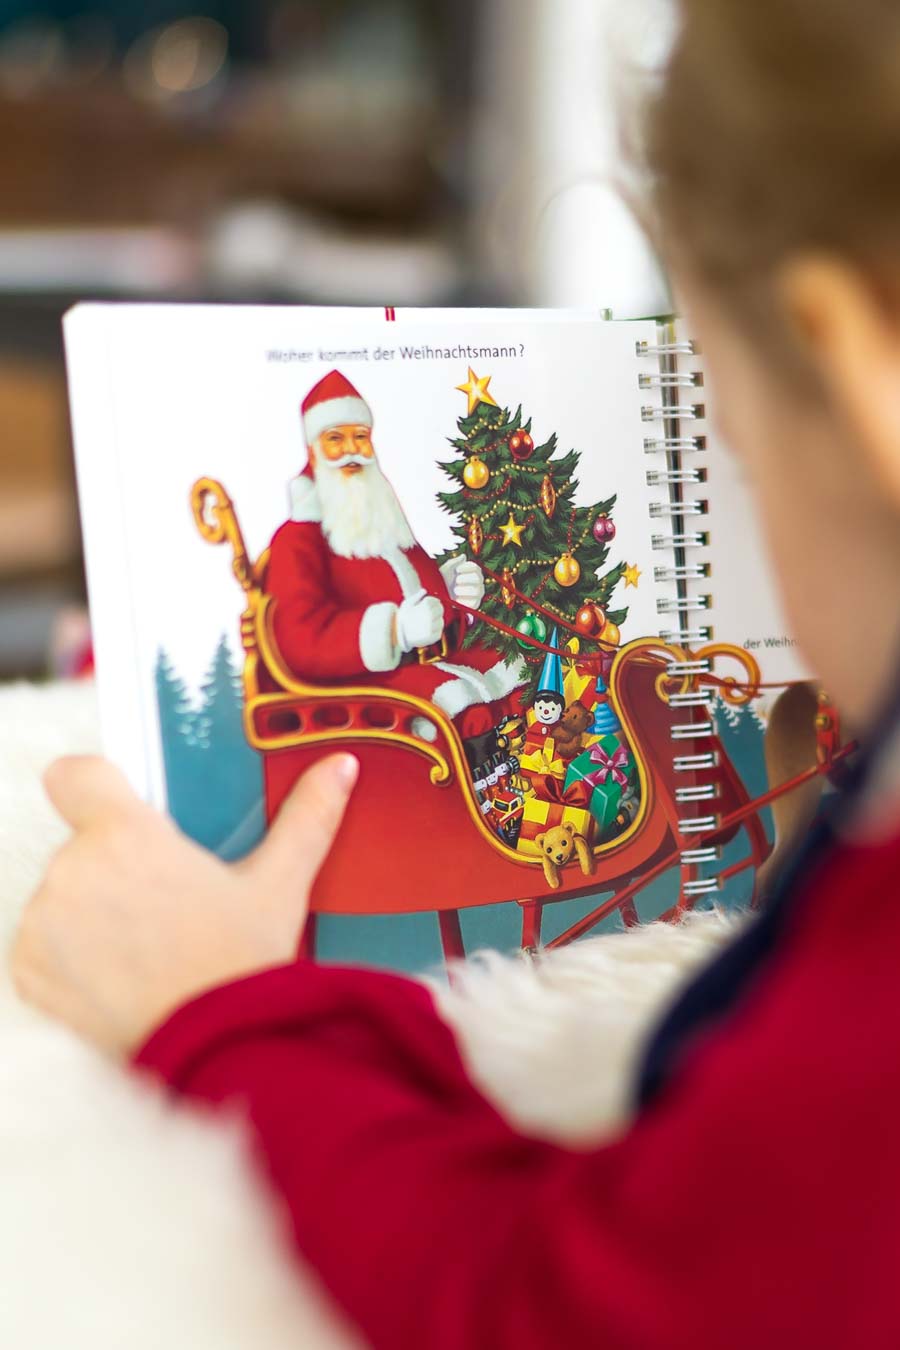 Weihnachtsbücher für Kinder: Bücher über Weihnachtszeit, Advent, Weihnachtsgeschenke und die Weihnachtsgeschichte. Unsere liebsten Weihnachtsgeschichten für Kinder auf dem Blog: www.chezmamapoule.com Alle Bildrechte: Ellen Girod #weihnachten #bilderbücher #weihnachtsbücher 